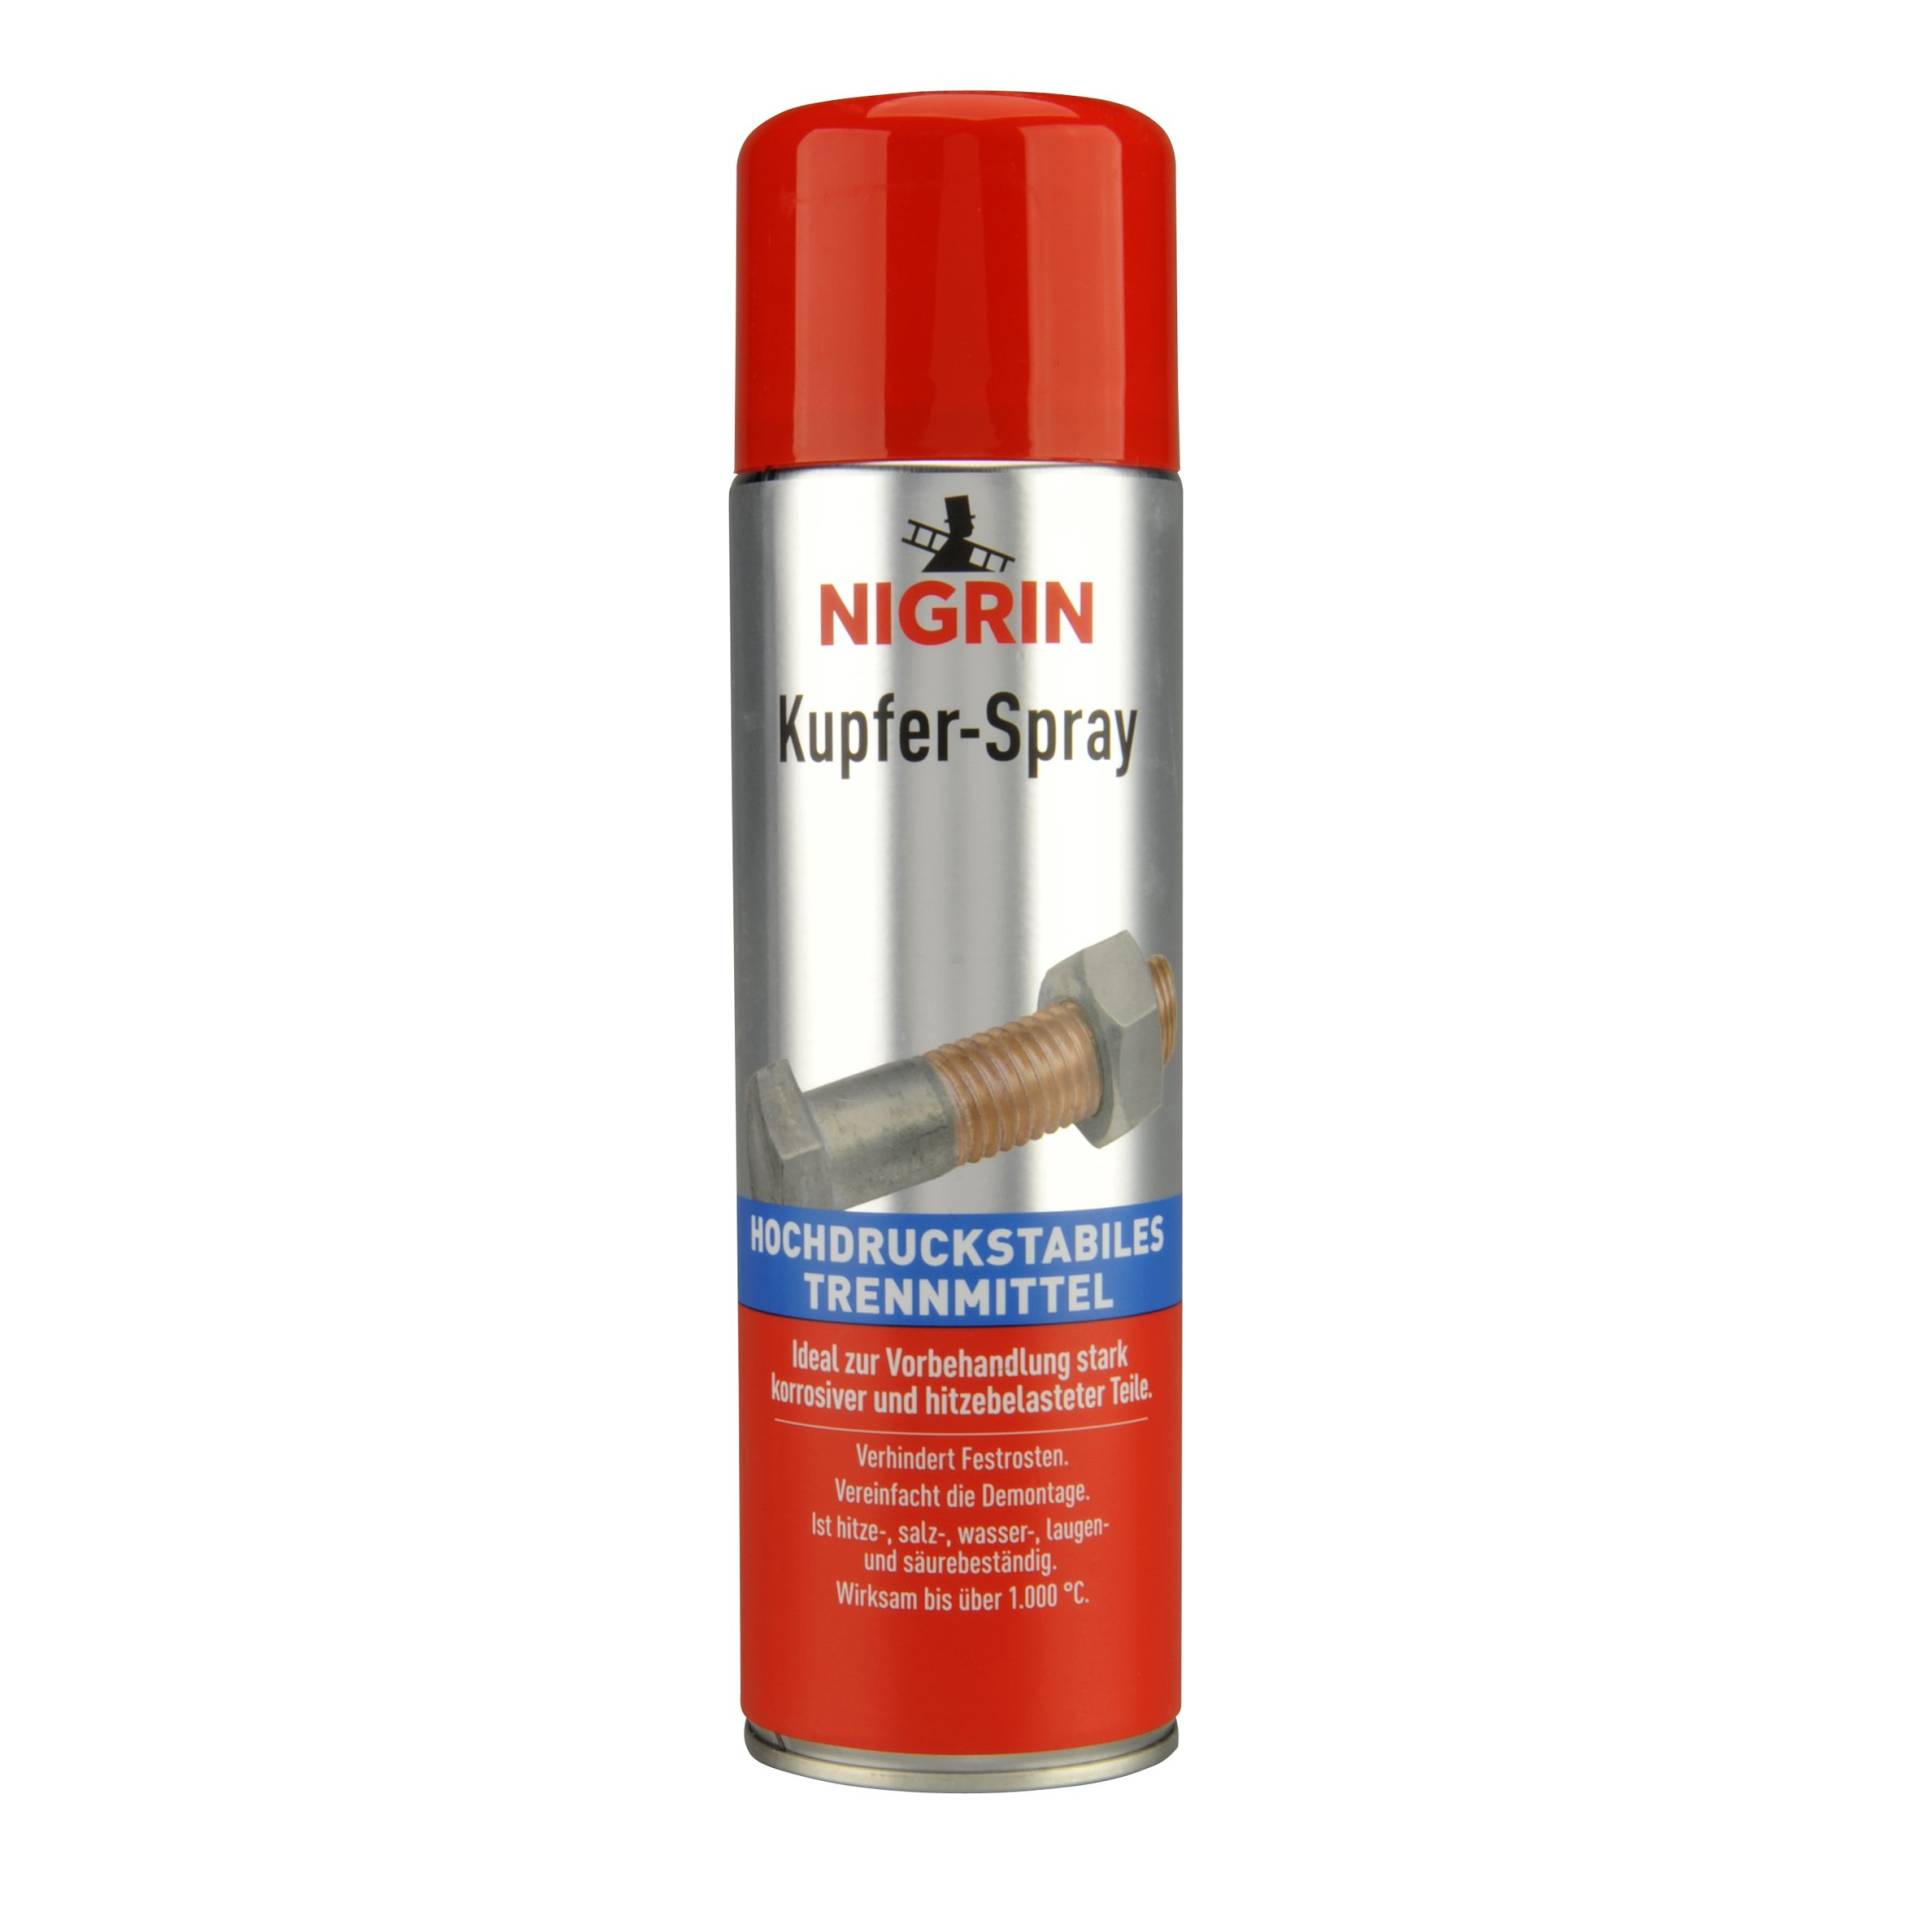 NIGRIN RepairTec Kupferspray, vereinfacht die Demontage, Trennmittel, 500 ml von NIGRIN